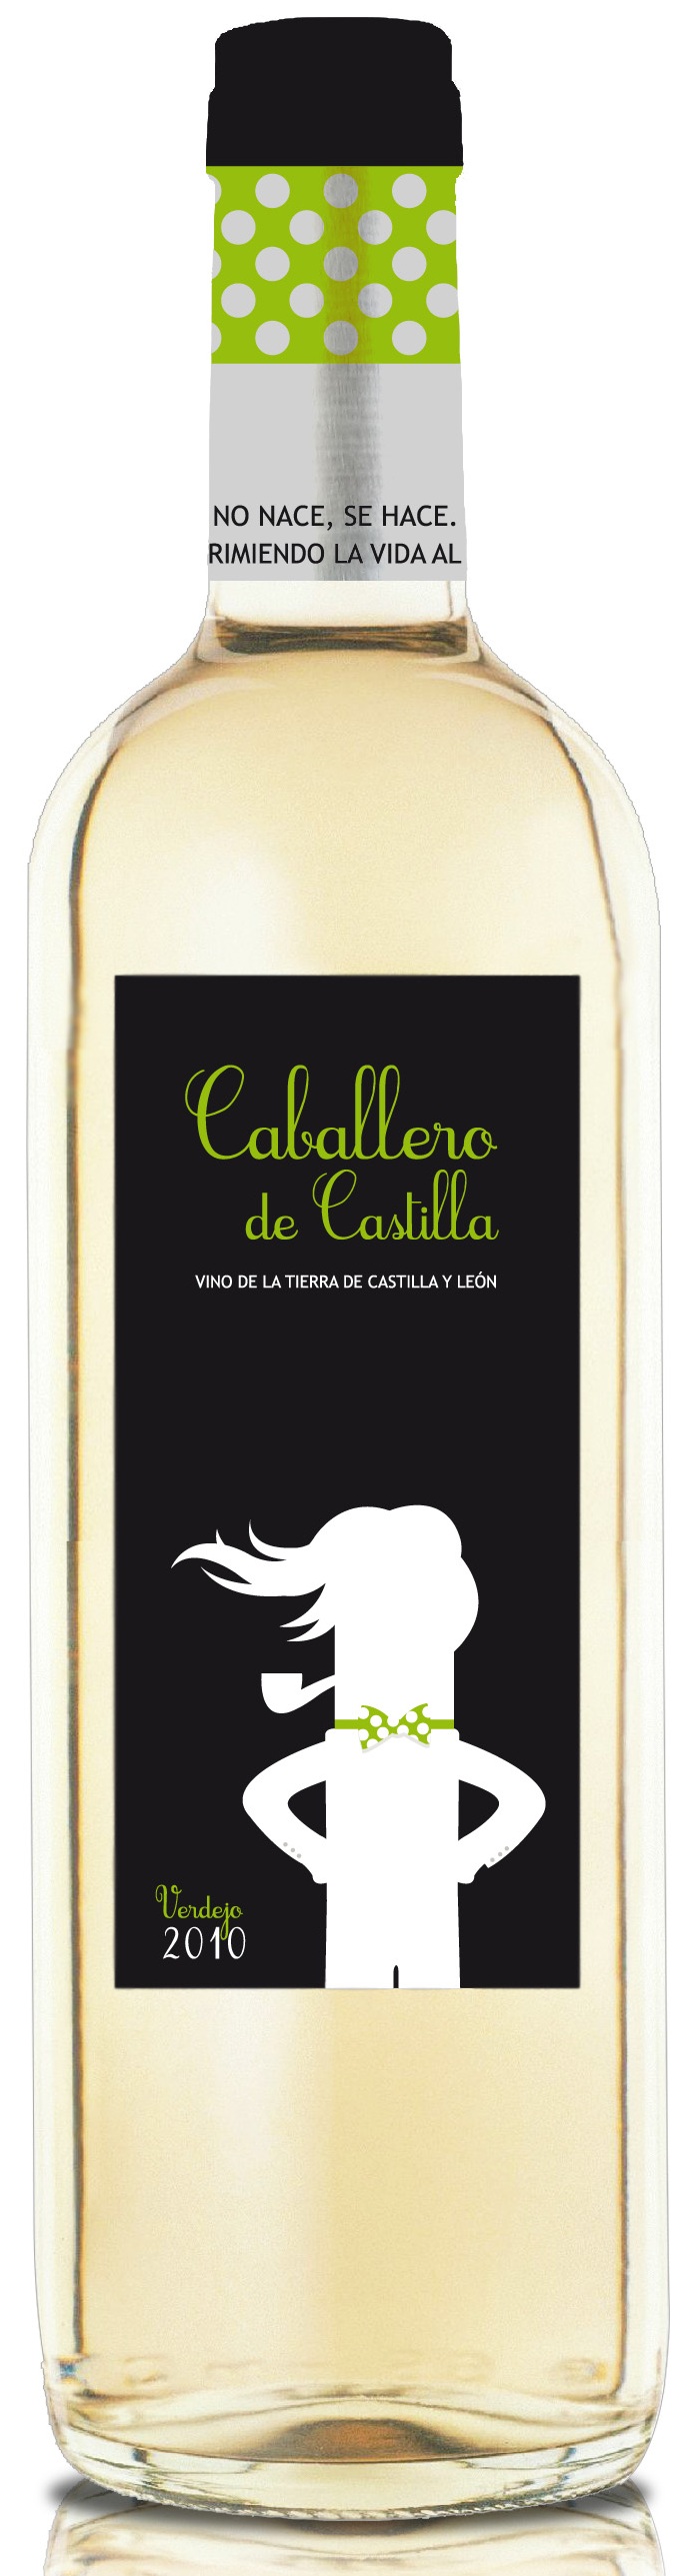 Bild von der Weinflasche Caballero de Castilla Verdejo